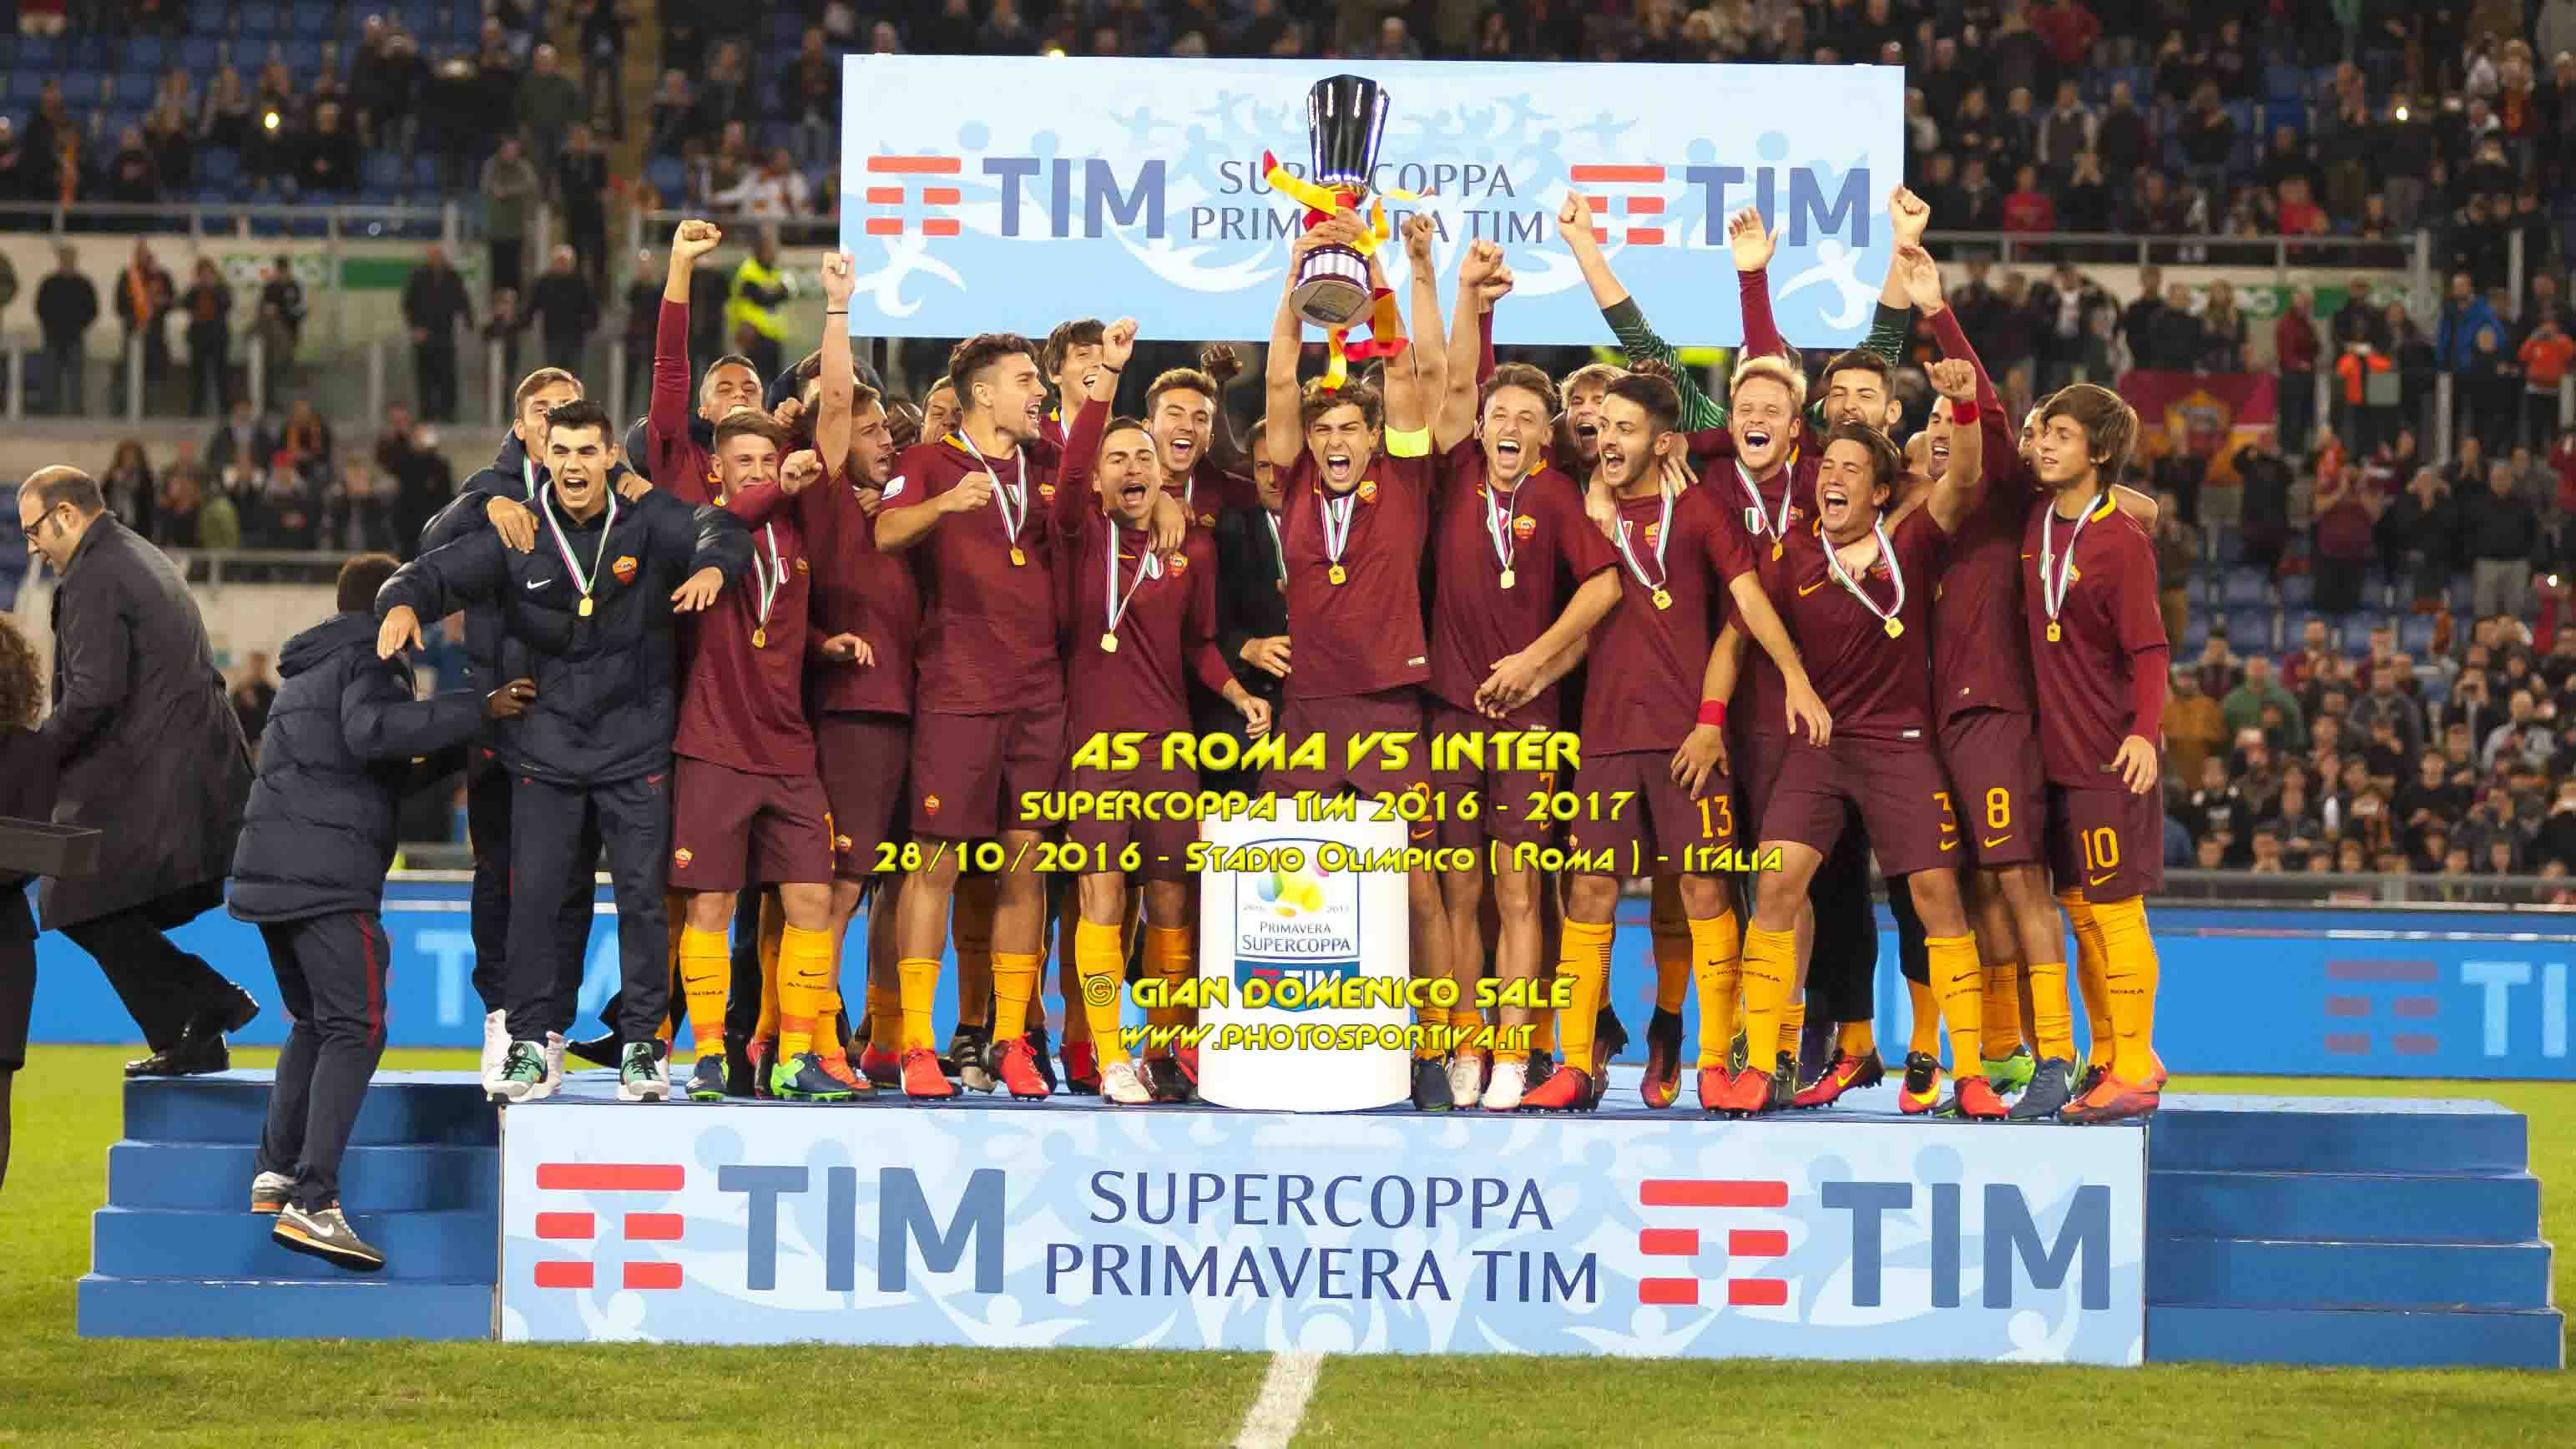 Supercoppa Primavera, strapotere giallorosso, meritato successo della Roma sull’Inter e trofeo conquistato